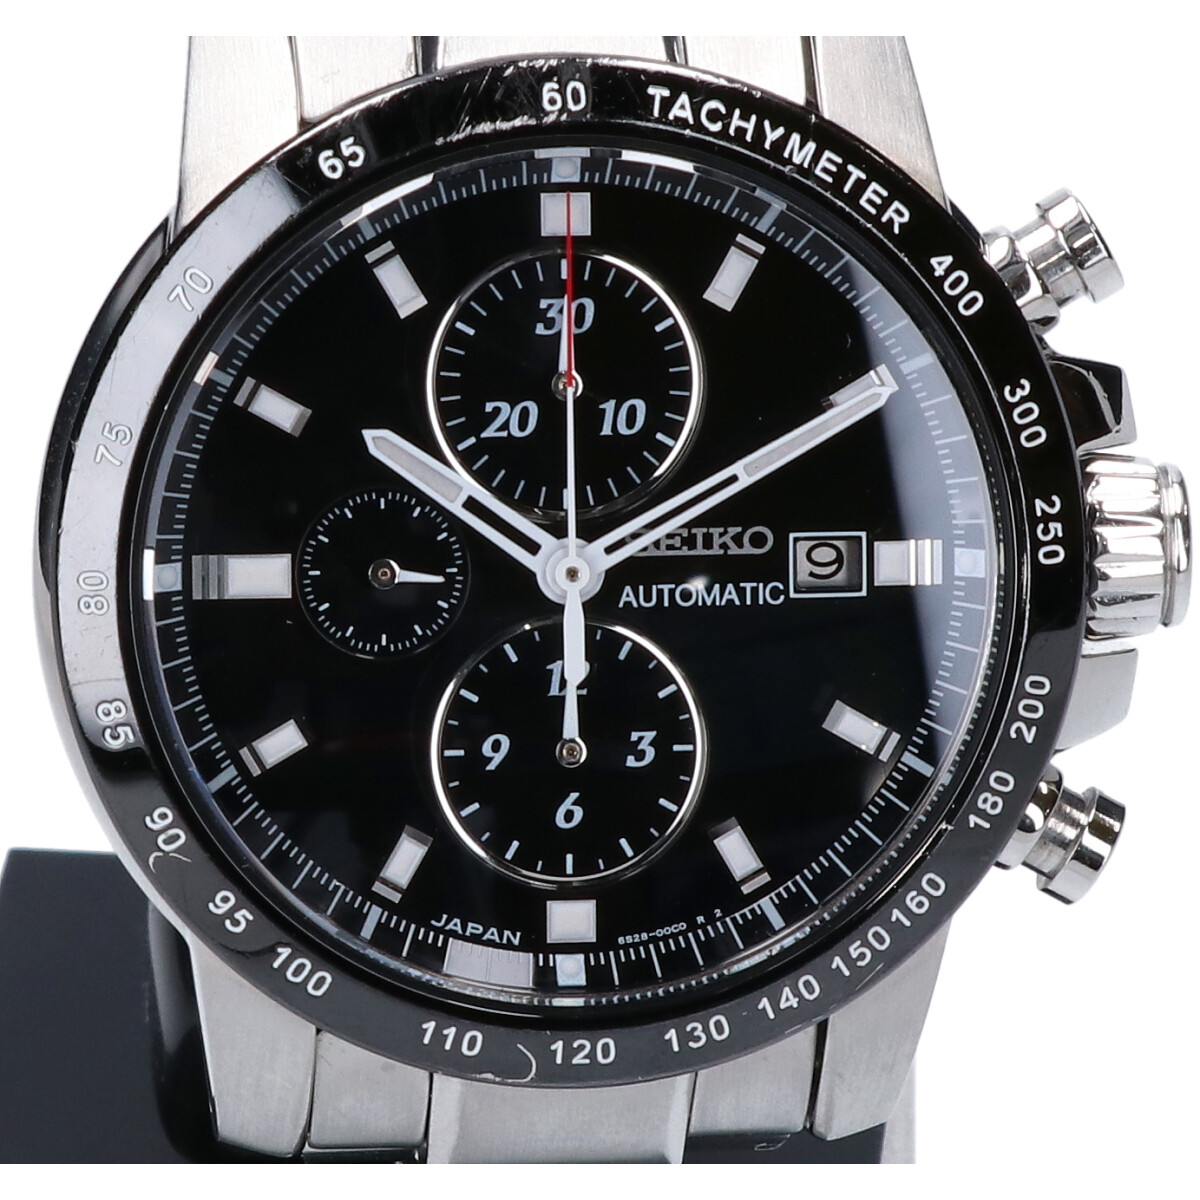 セイコーのSAGH001 ブライツ フェニックス メカニカル シースルーバック 腕時計の買取実績です。